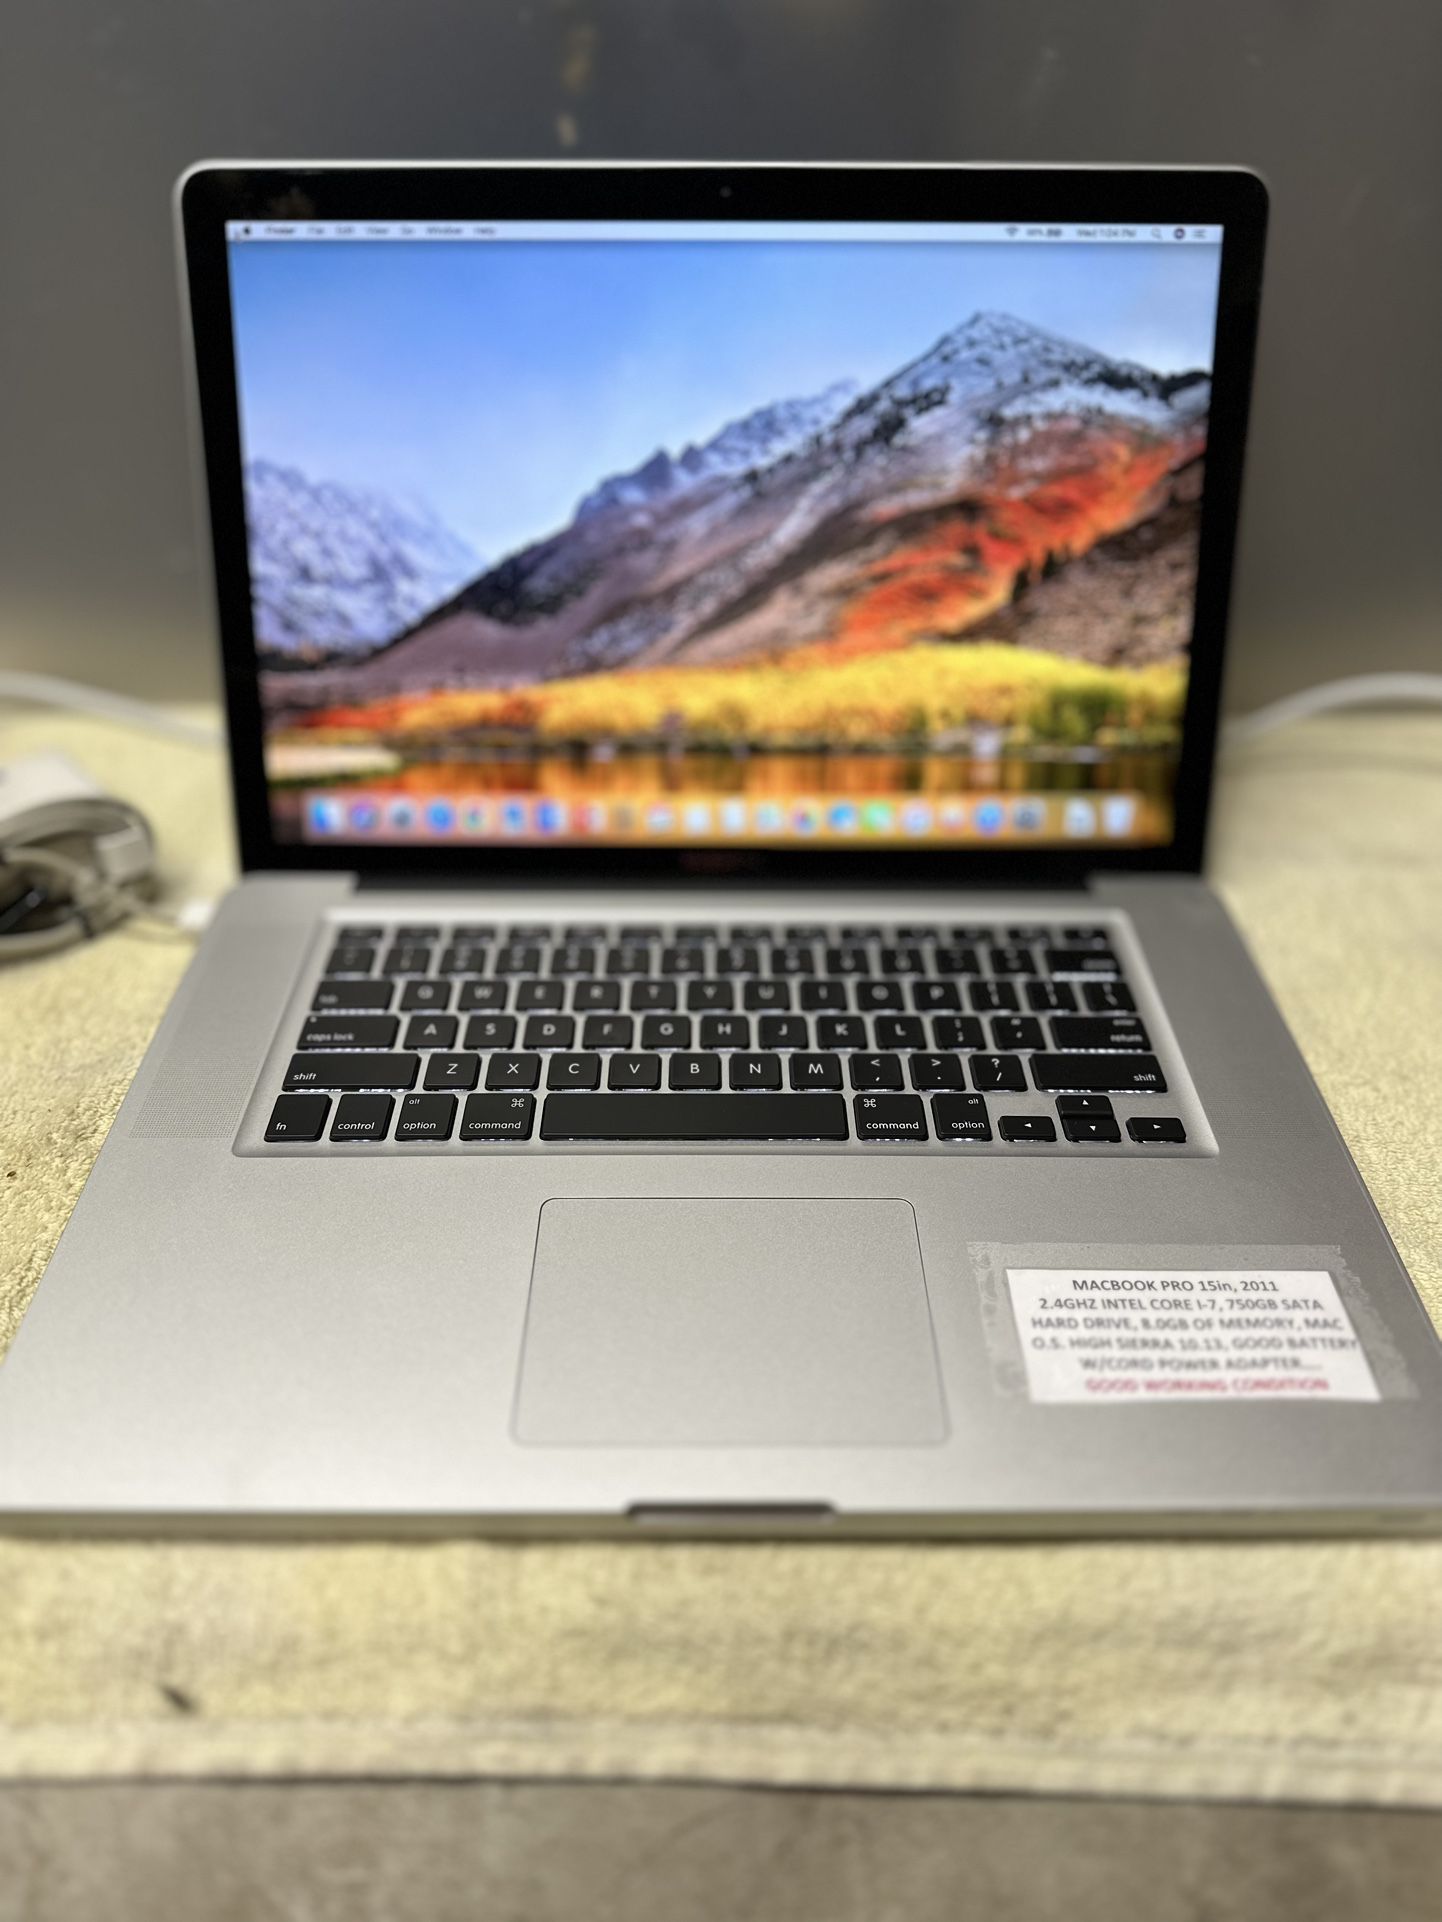 Mac Book Pro 15in 2.4ghz Intel Core I-7